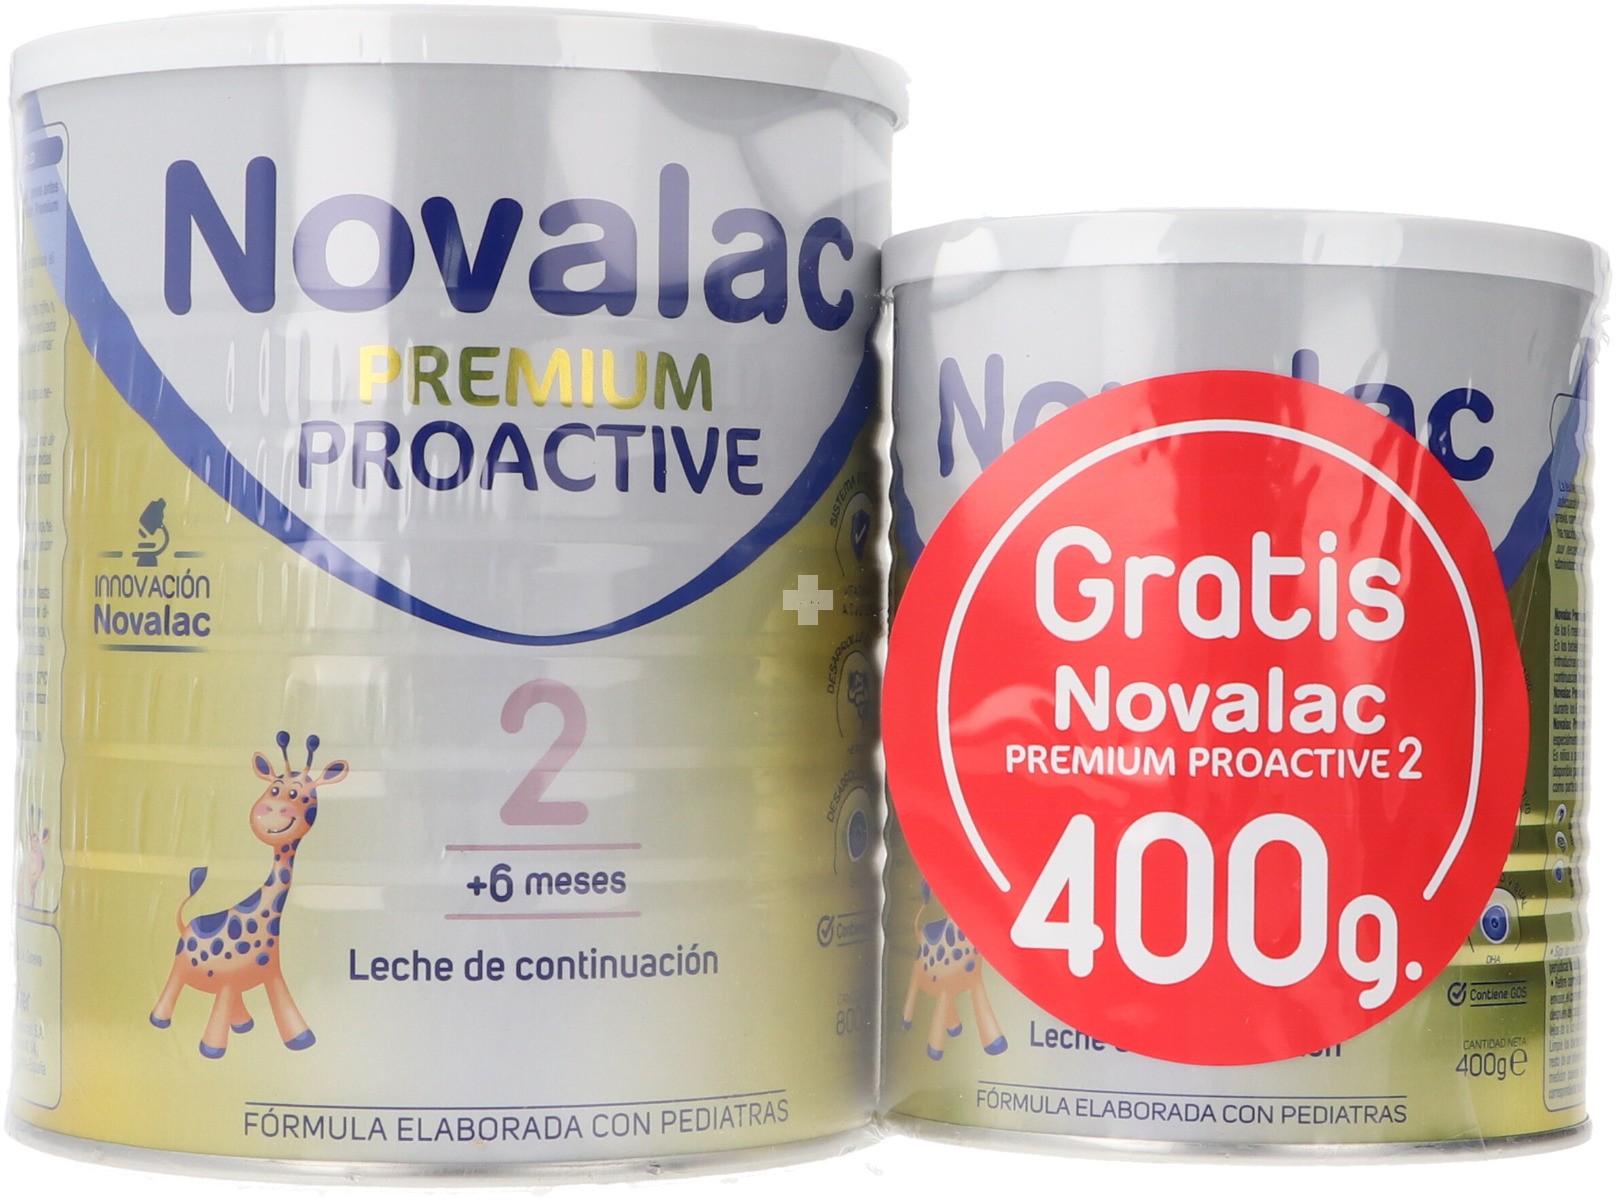 Novalac Proactive 2 800 gr + Gratis 400 gr